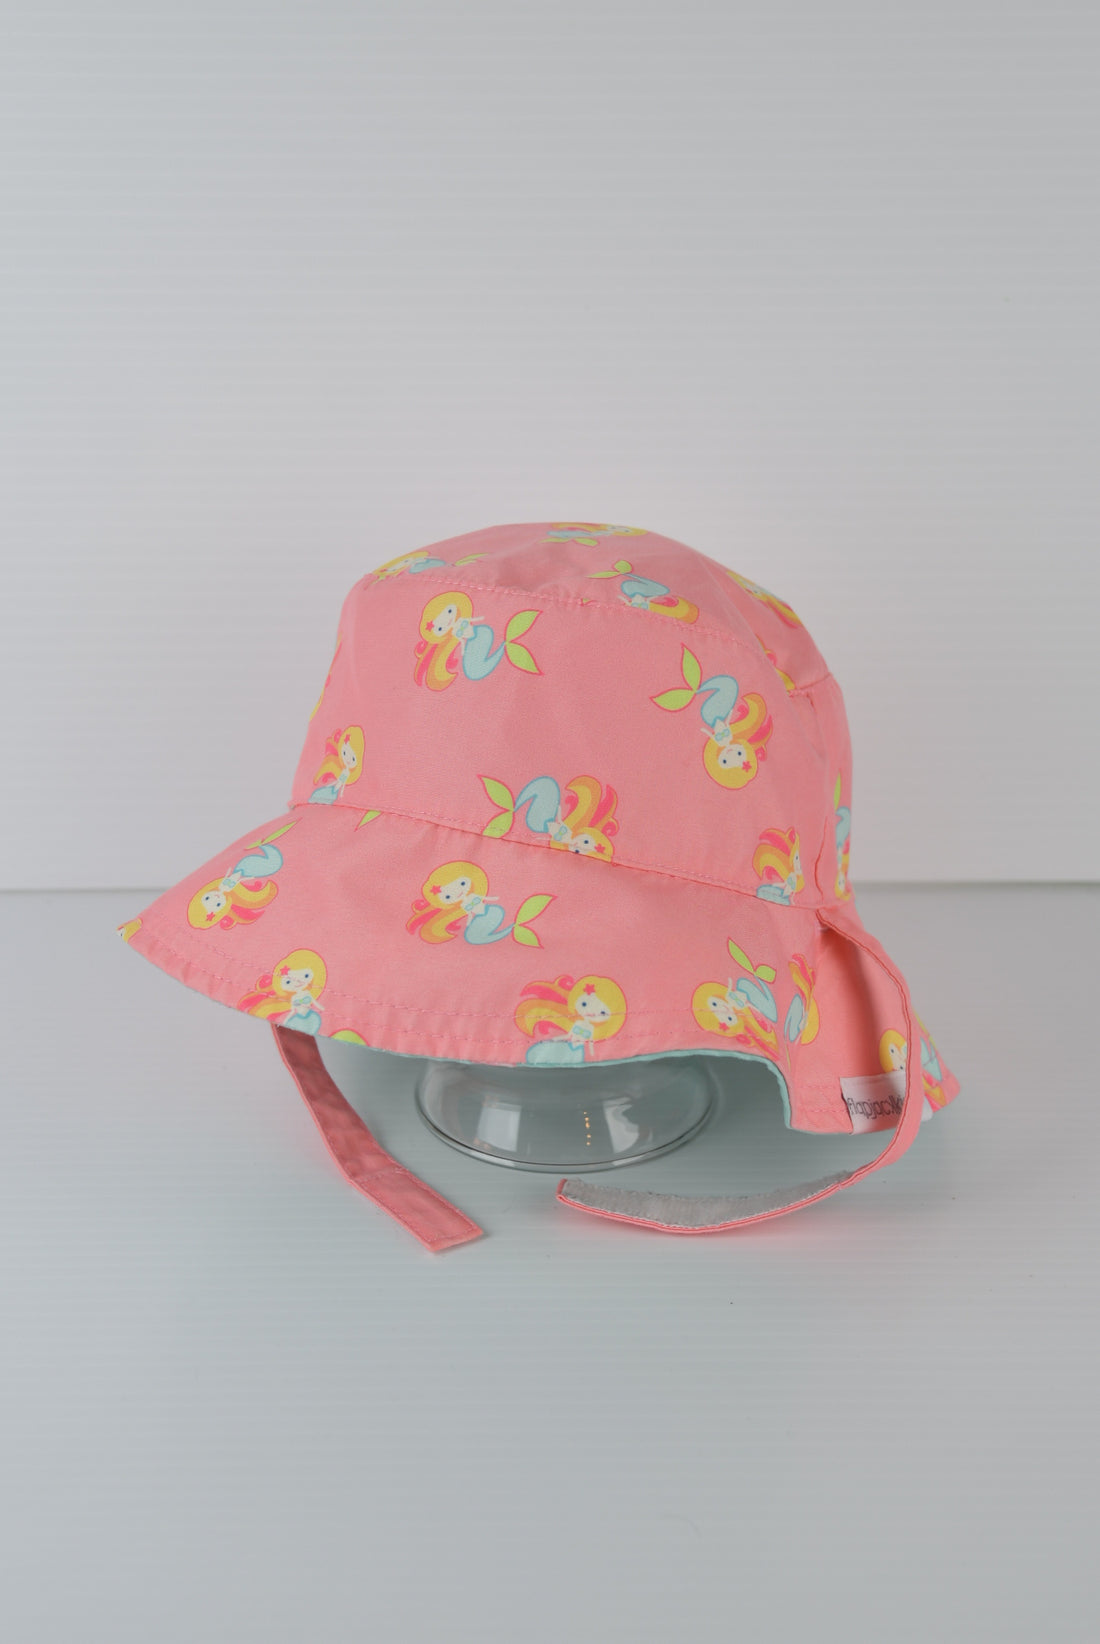 Flapjack Kids Reversible Summer Hat (Mermaids and Seahorses) (6-18M)